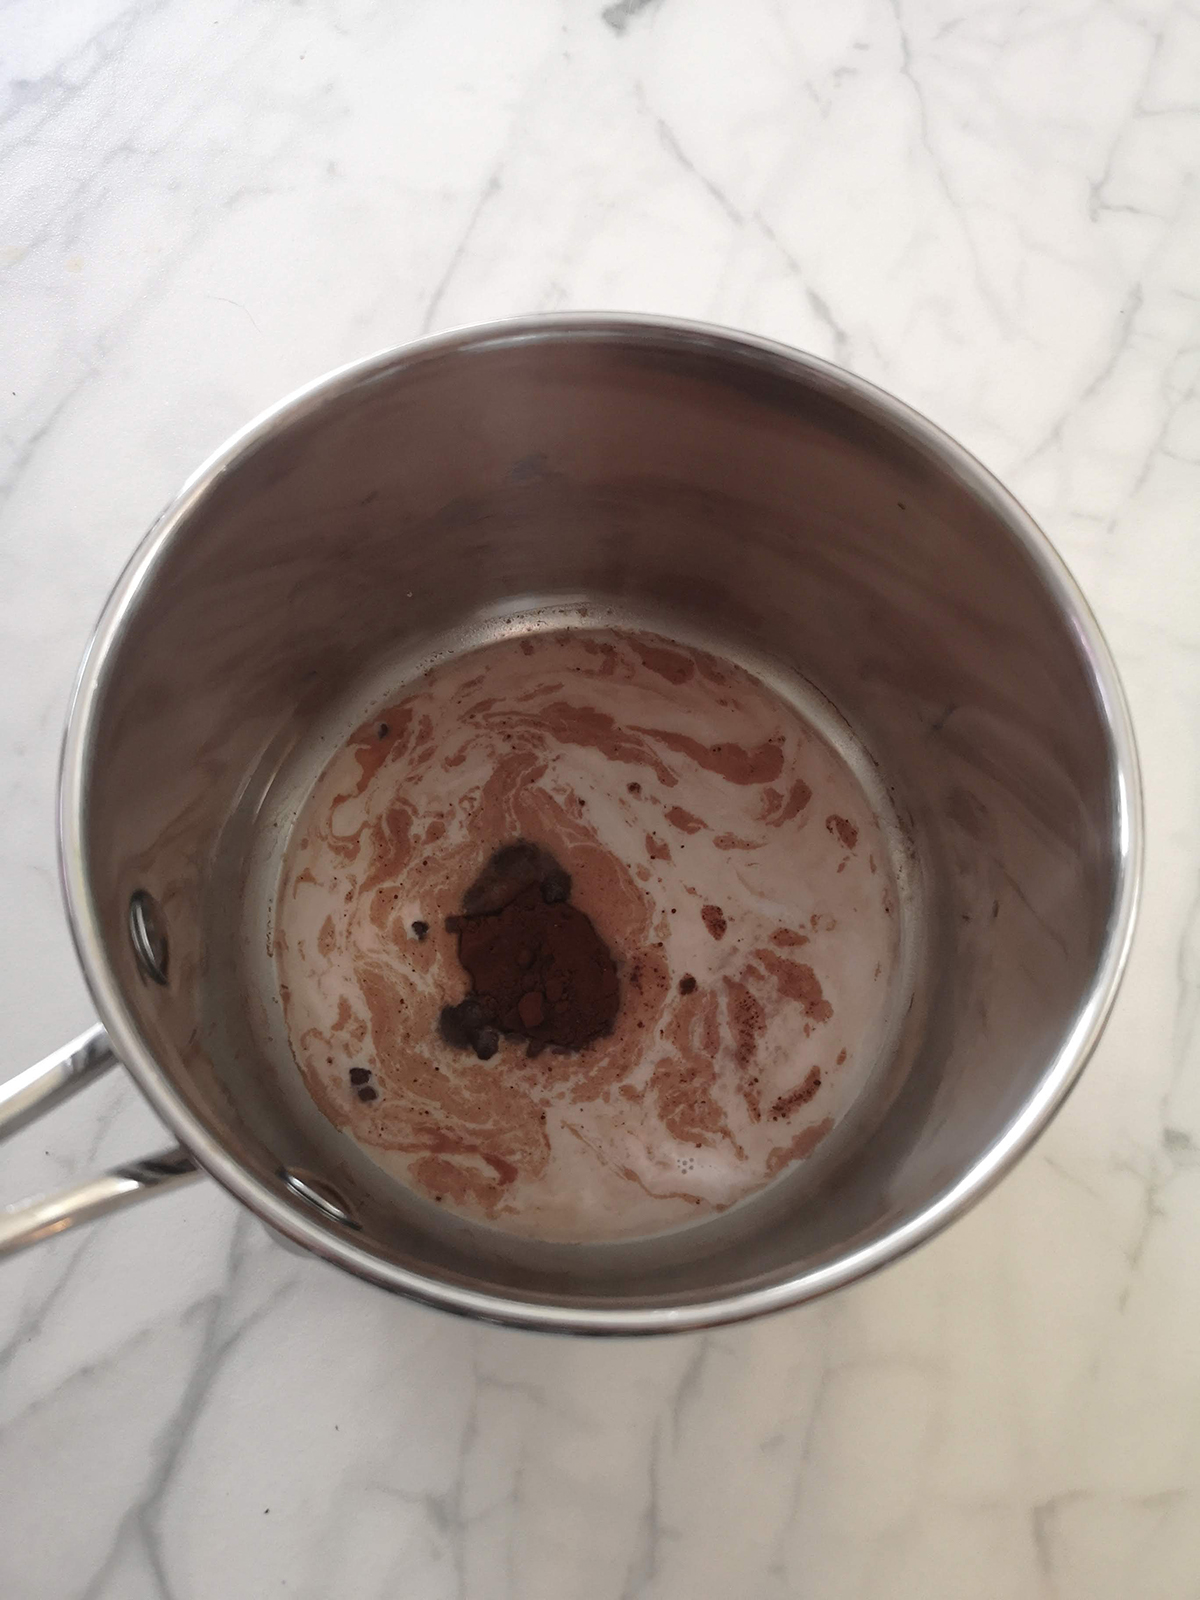 making hot chocolate